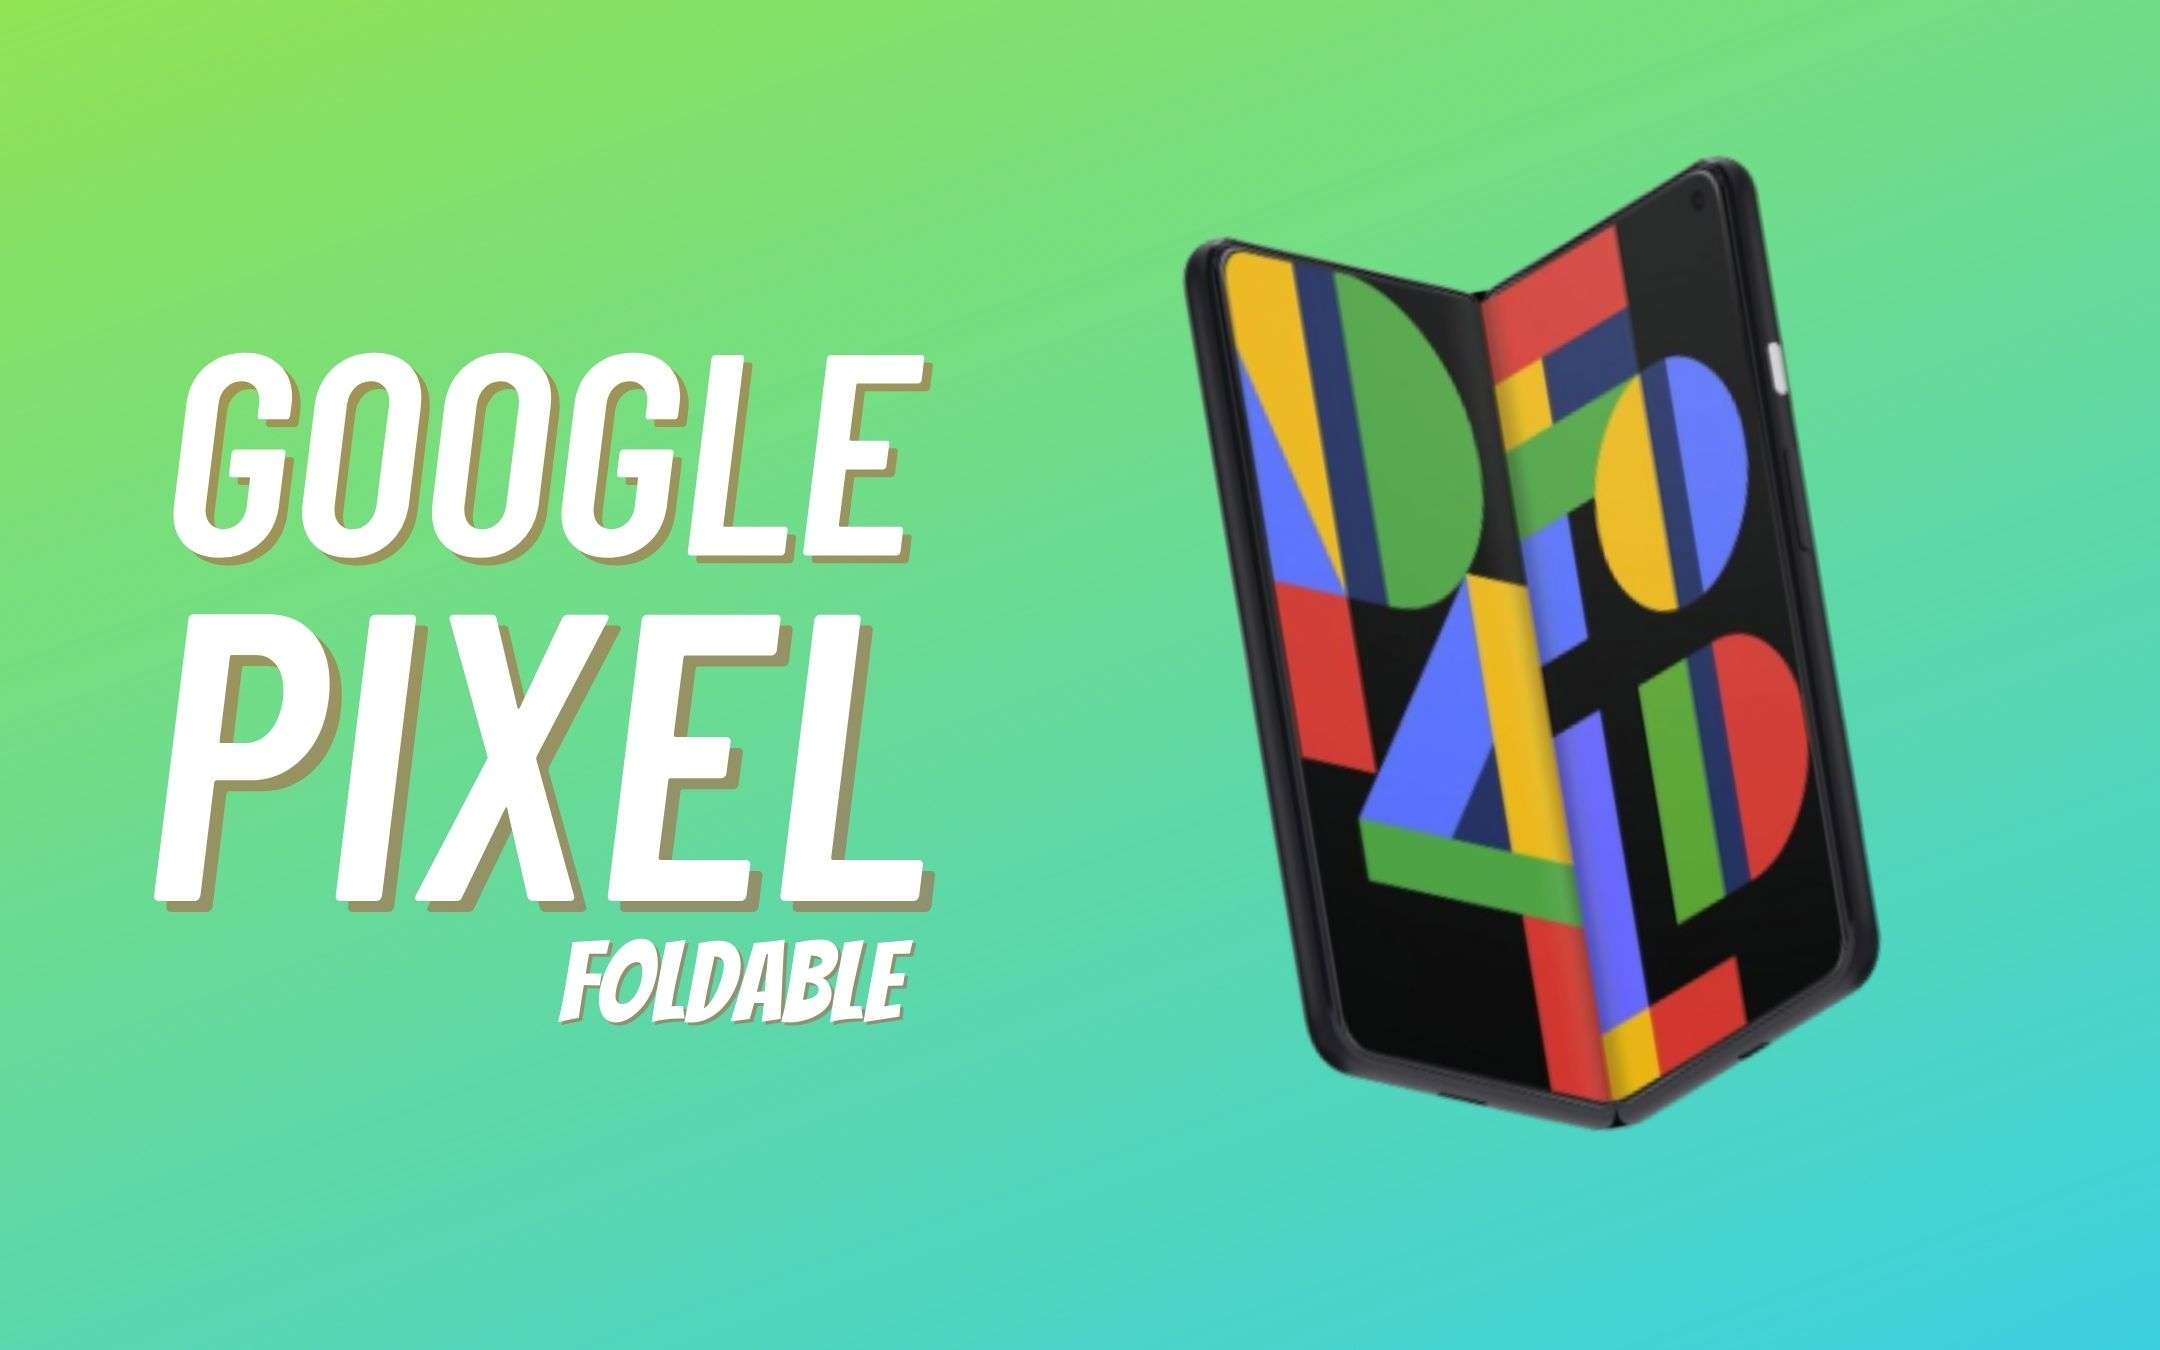 Si, arriverà un Google Pixel pieghevole!